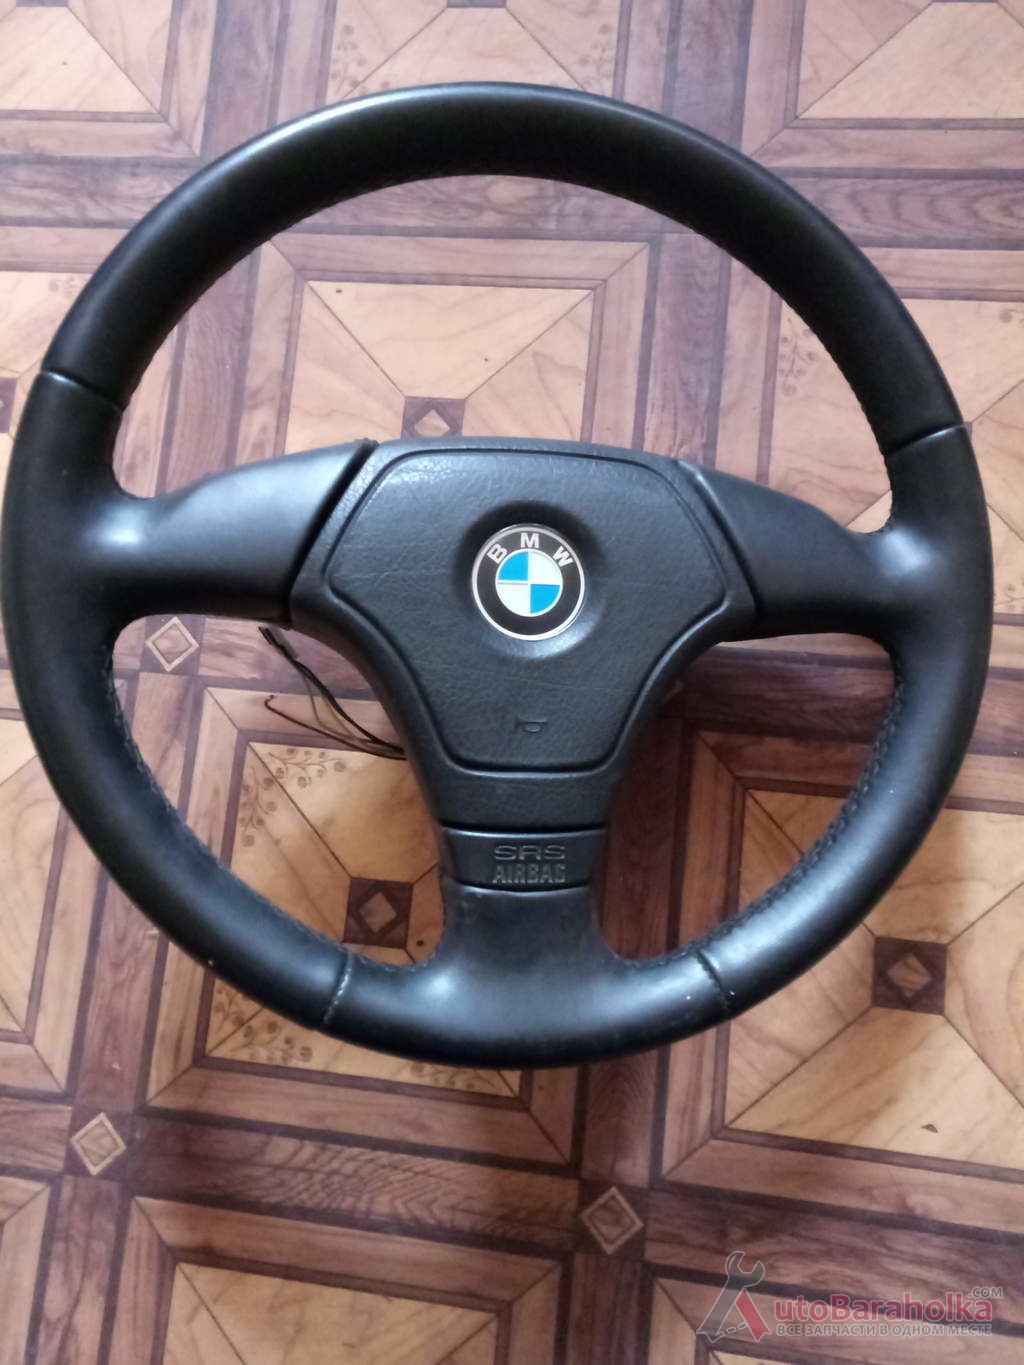 Продам руль с BMW в хорошем состоянии, подушка целая Харьков